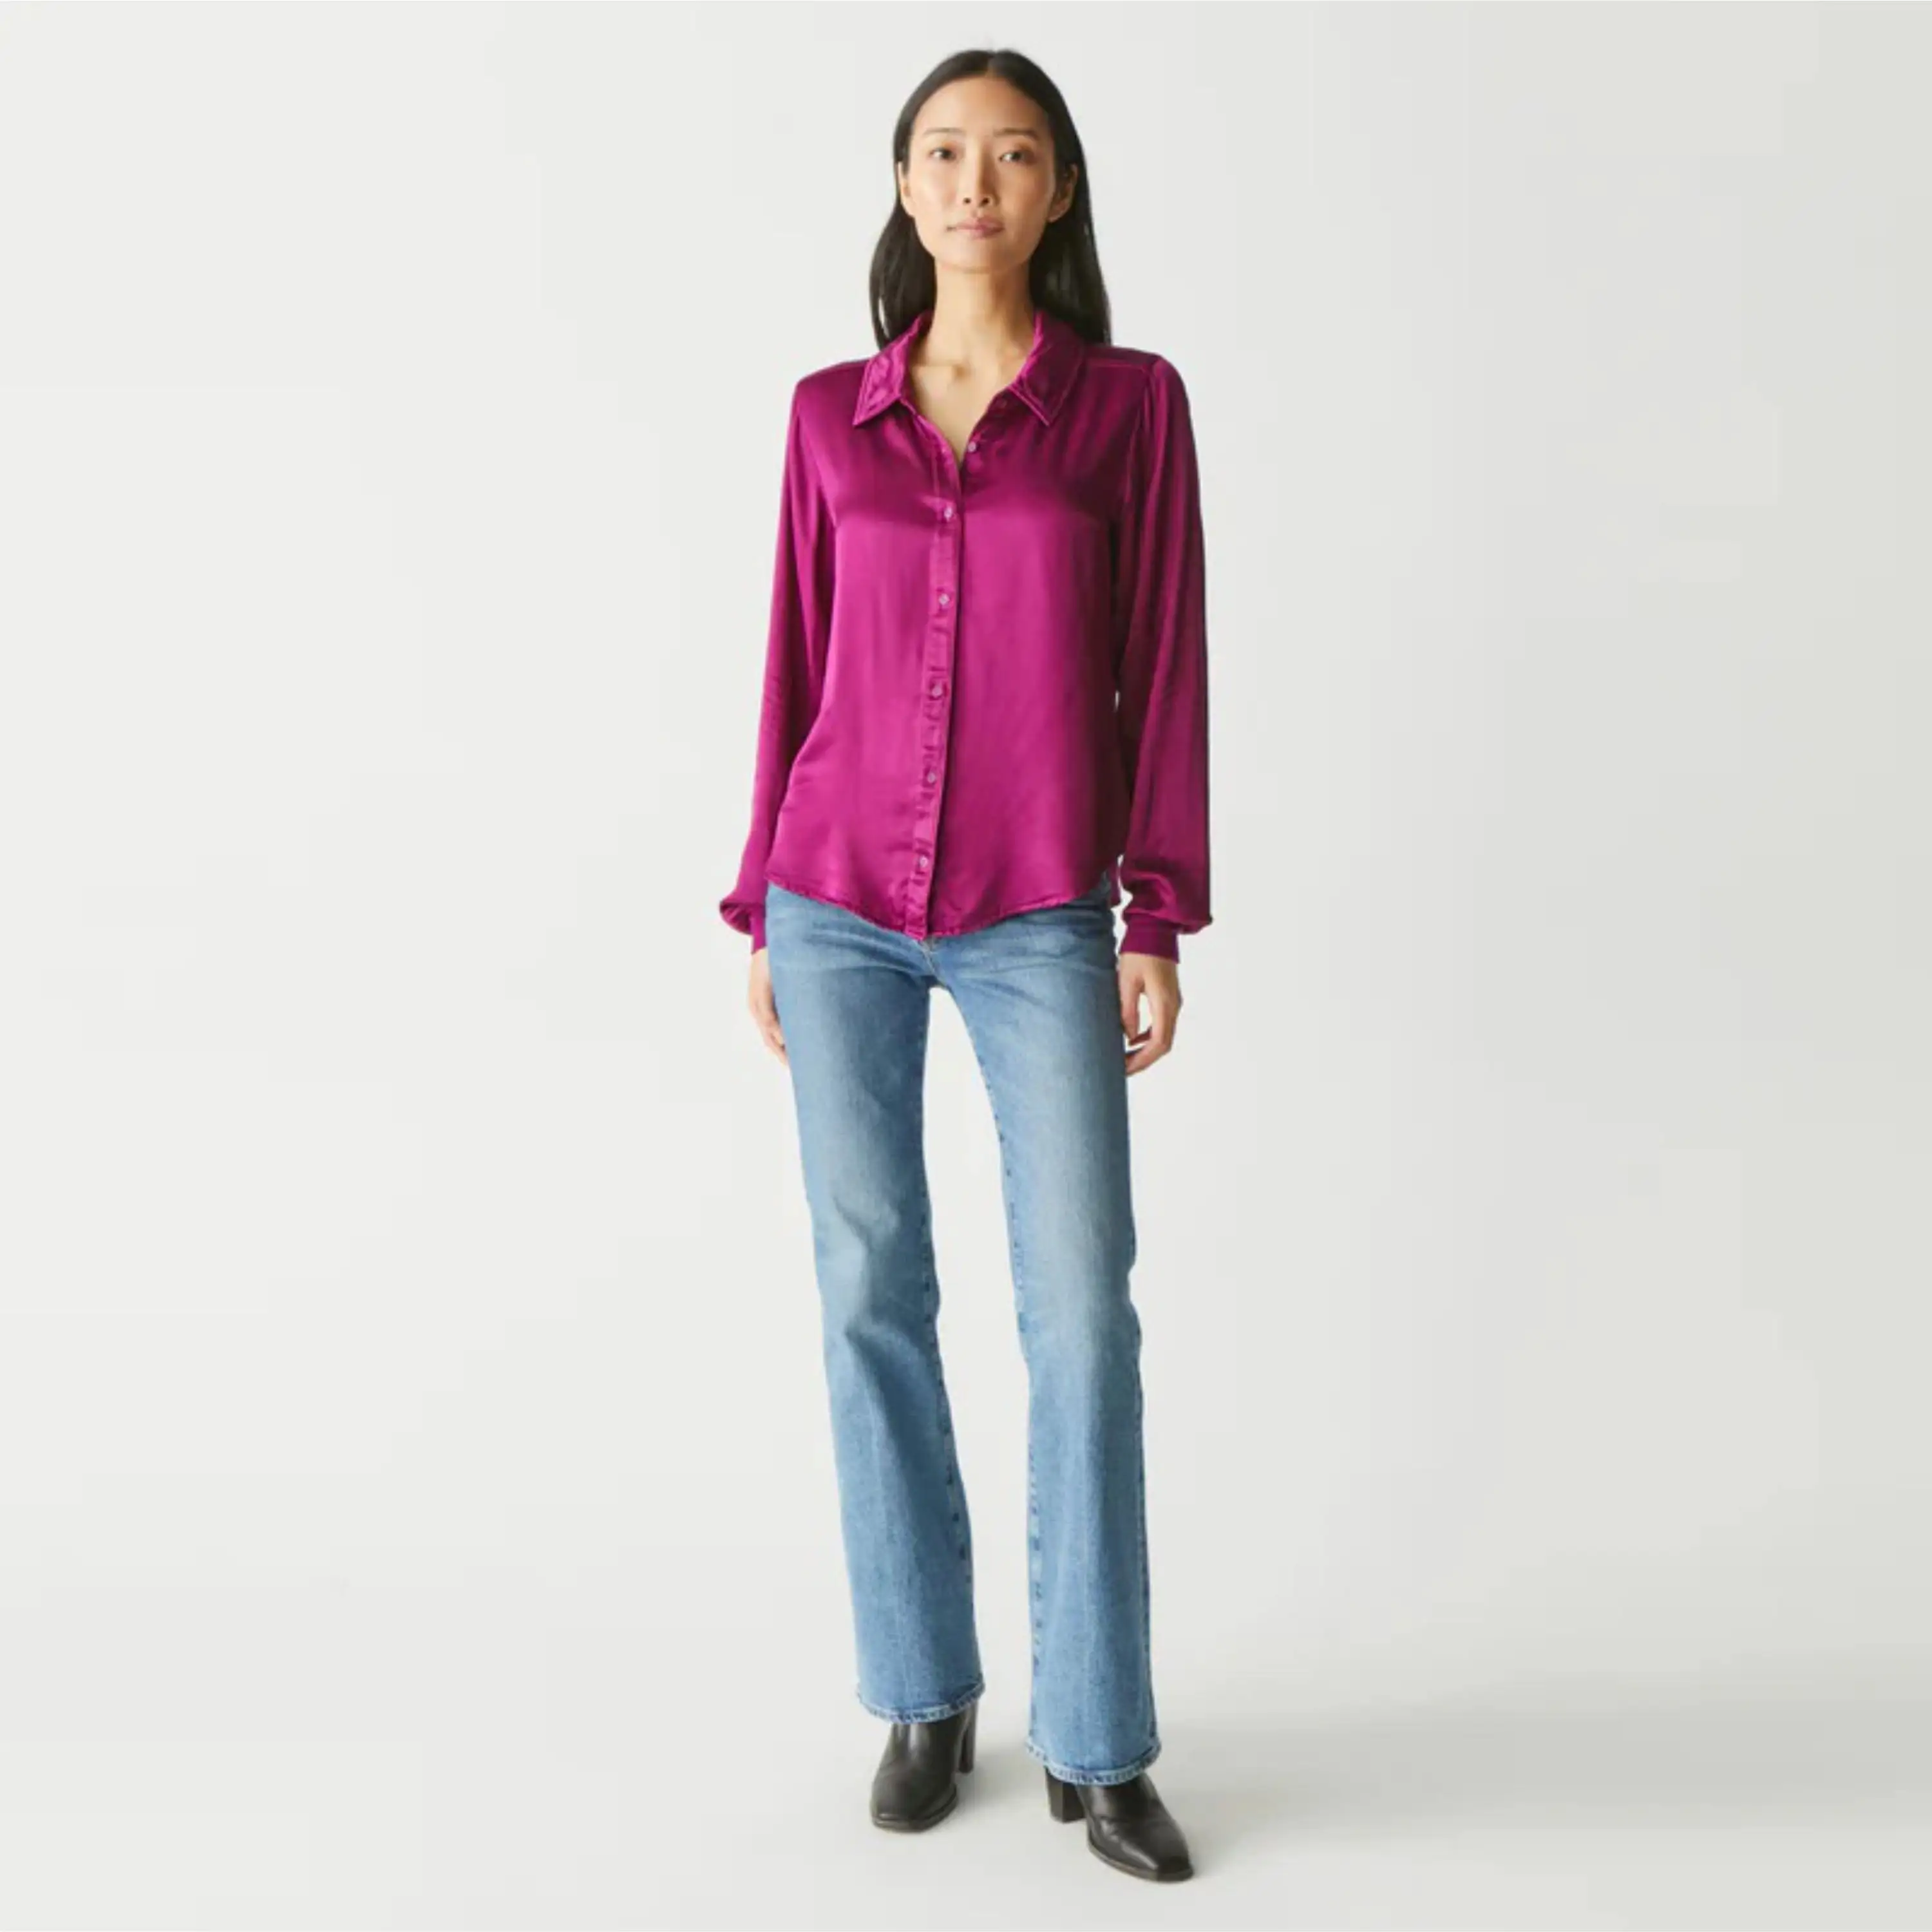 Стильная Женская атласная блузка-гладкая и шелковистая текстура, идеально подходит для профессиональной и повседневной одежды, поставляется в различных оттенках